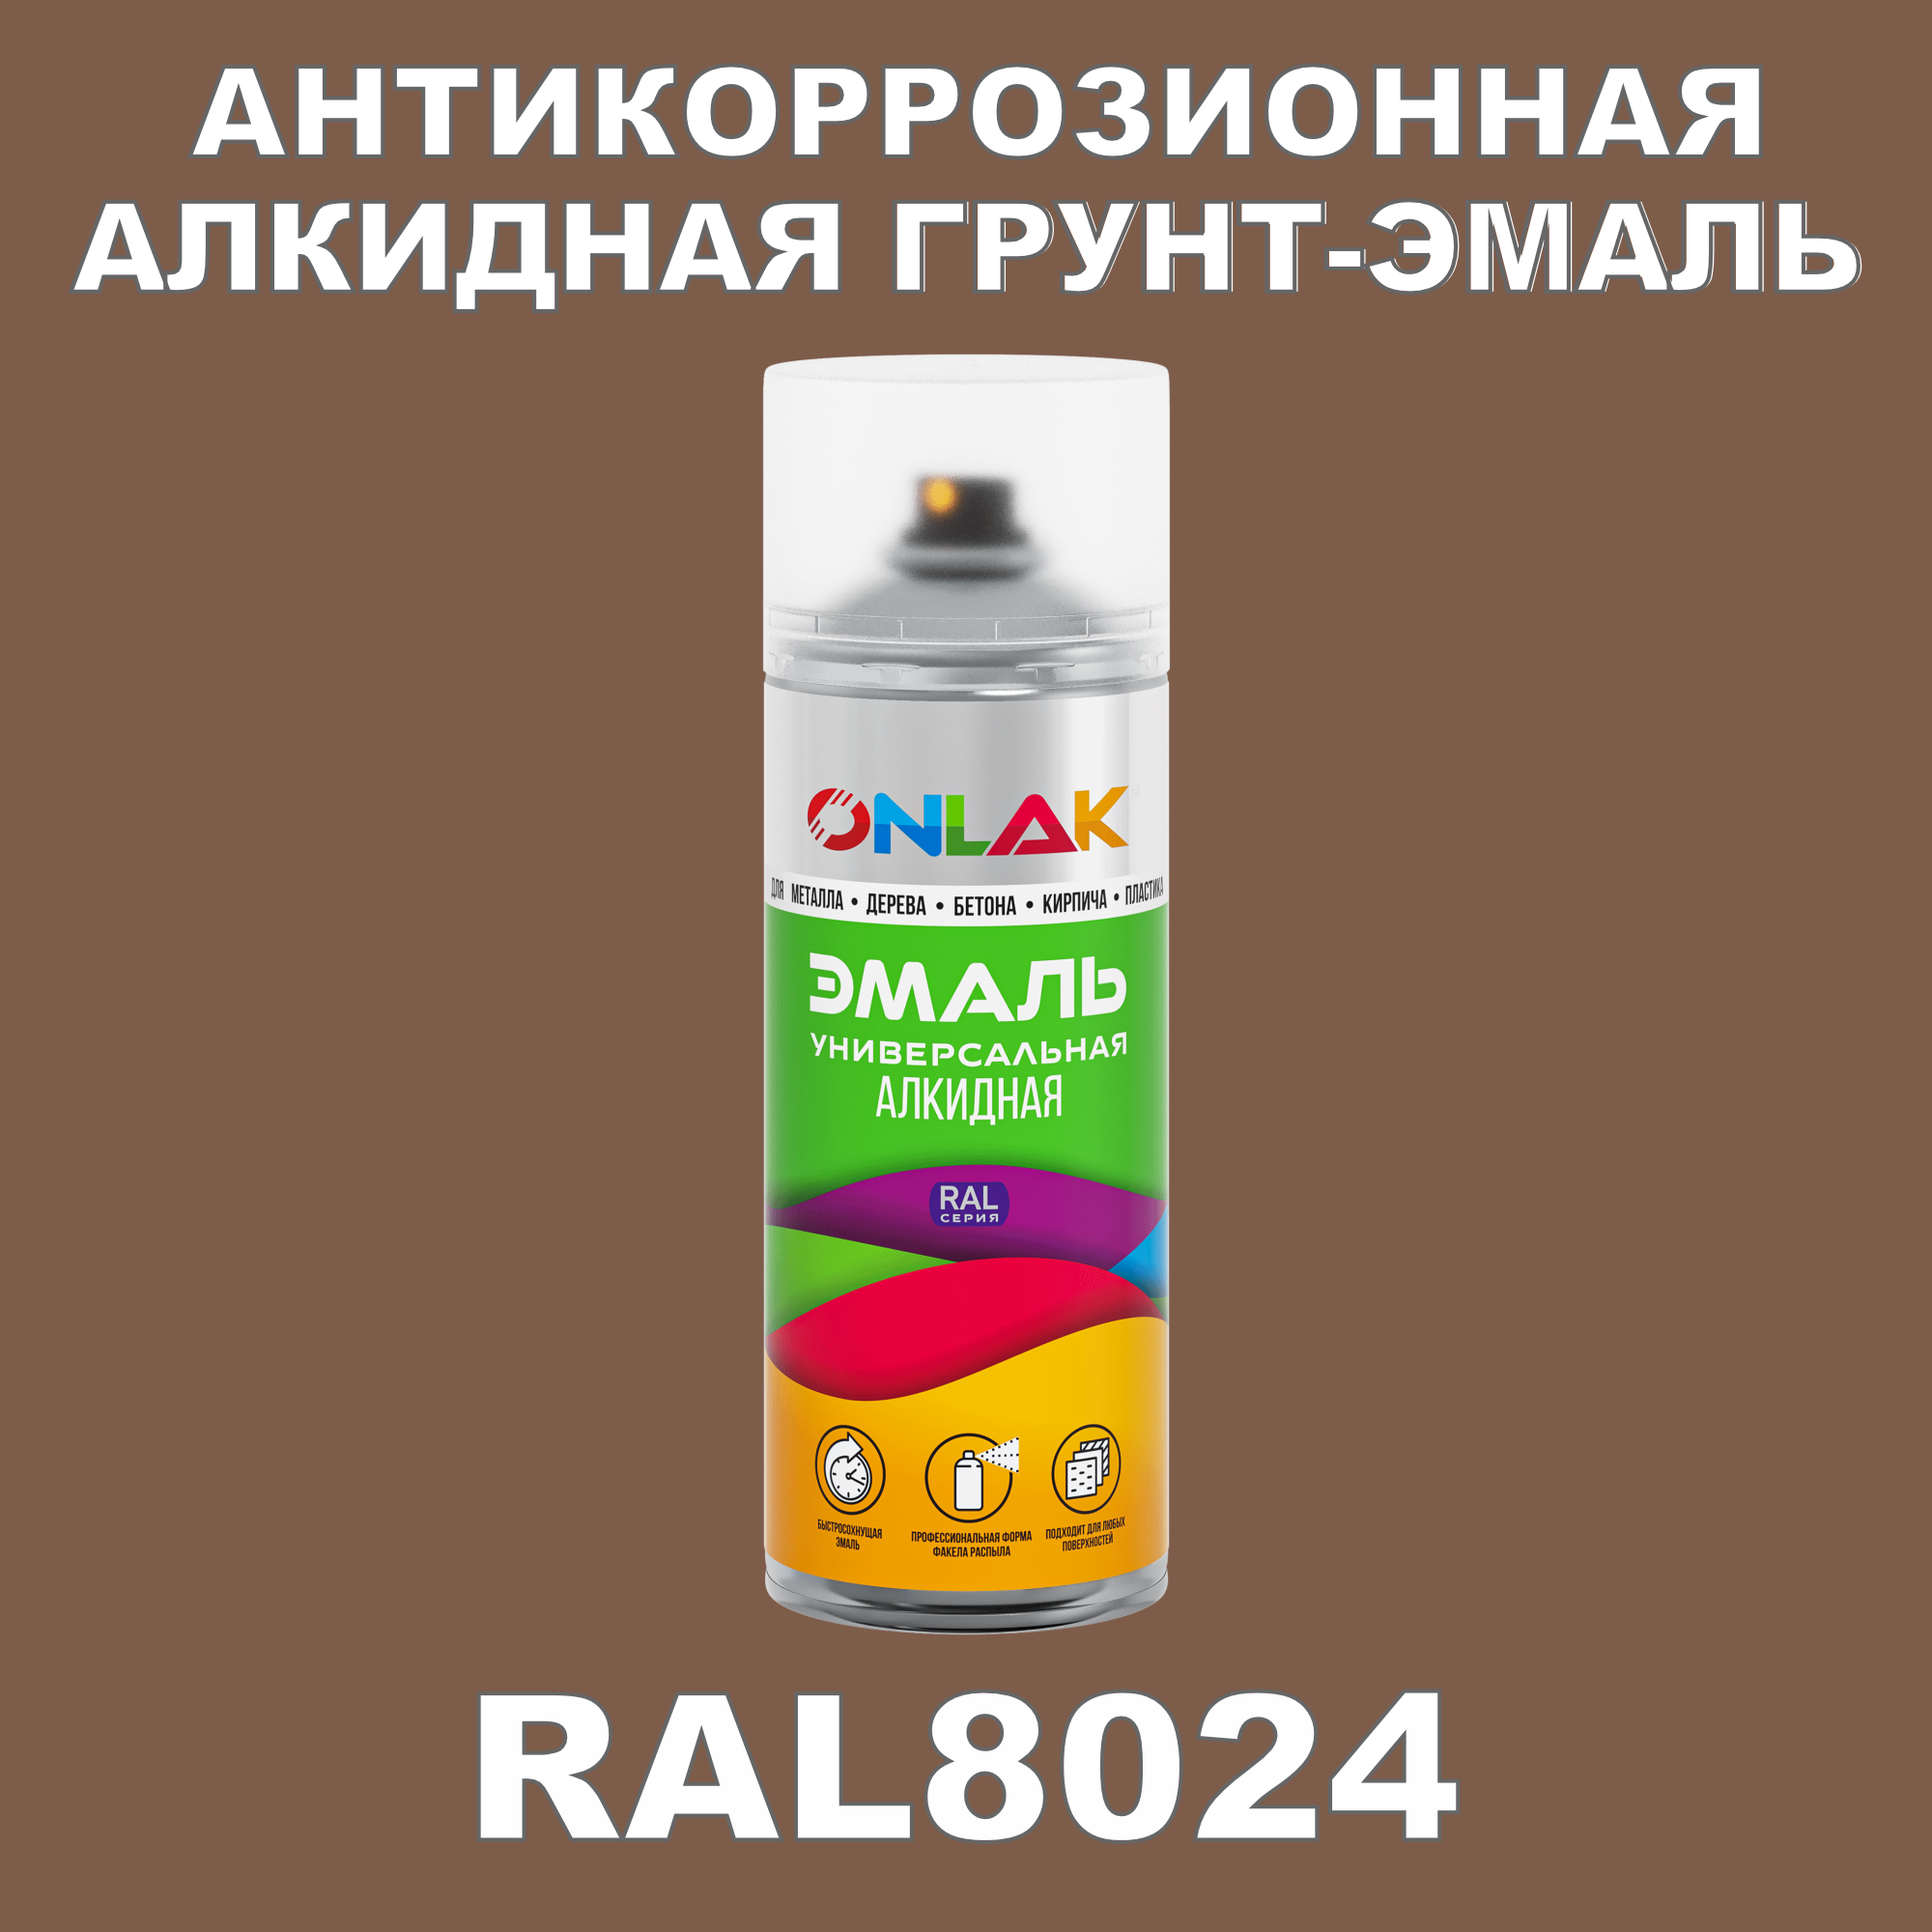 Антикоррозионная грунт-эмаль ONLAK RAL8024 матовая для металла и защиты от ржавчины